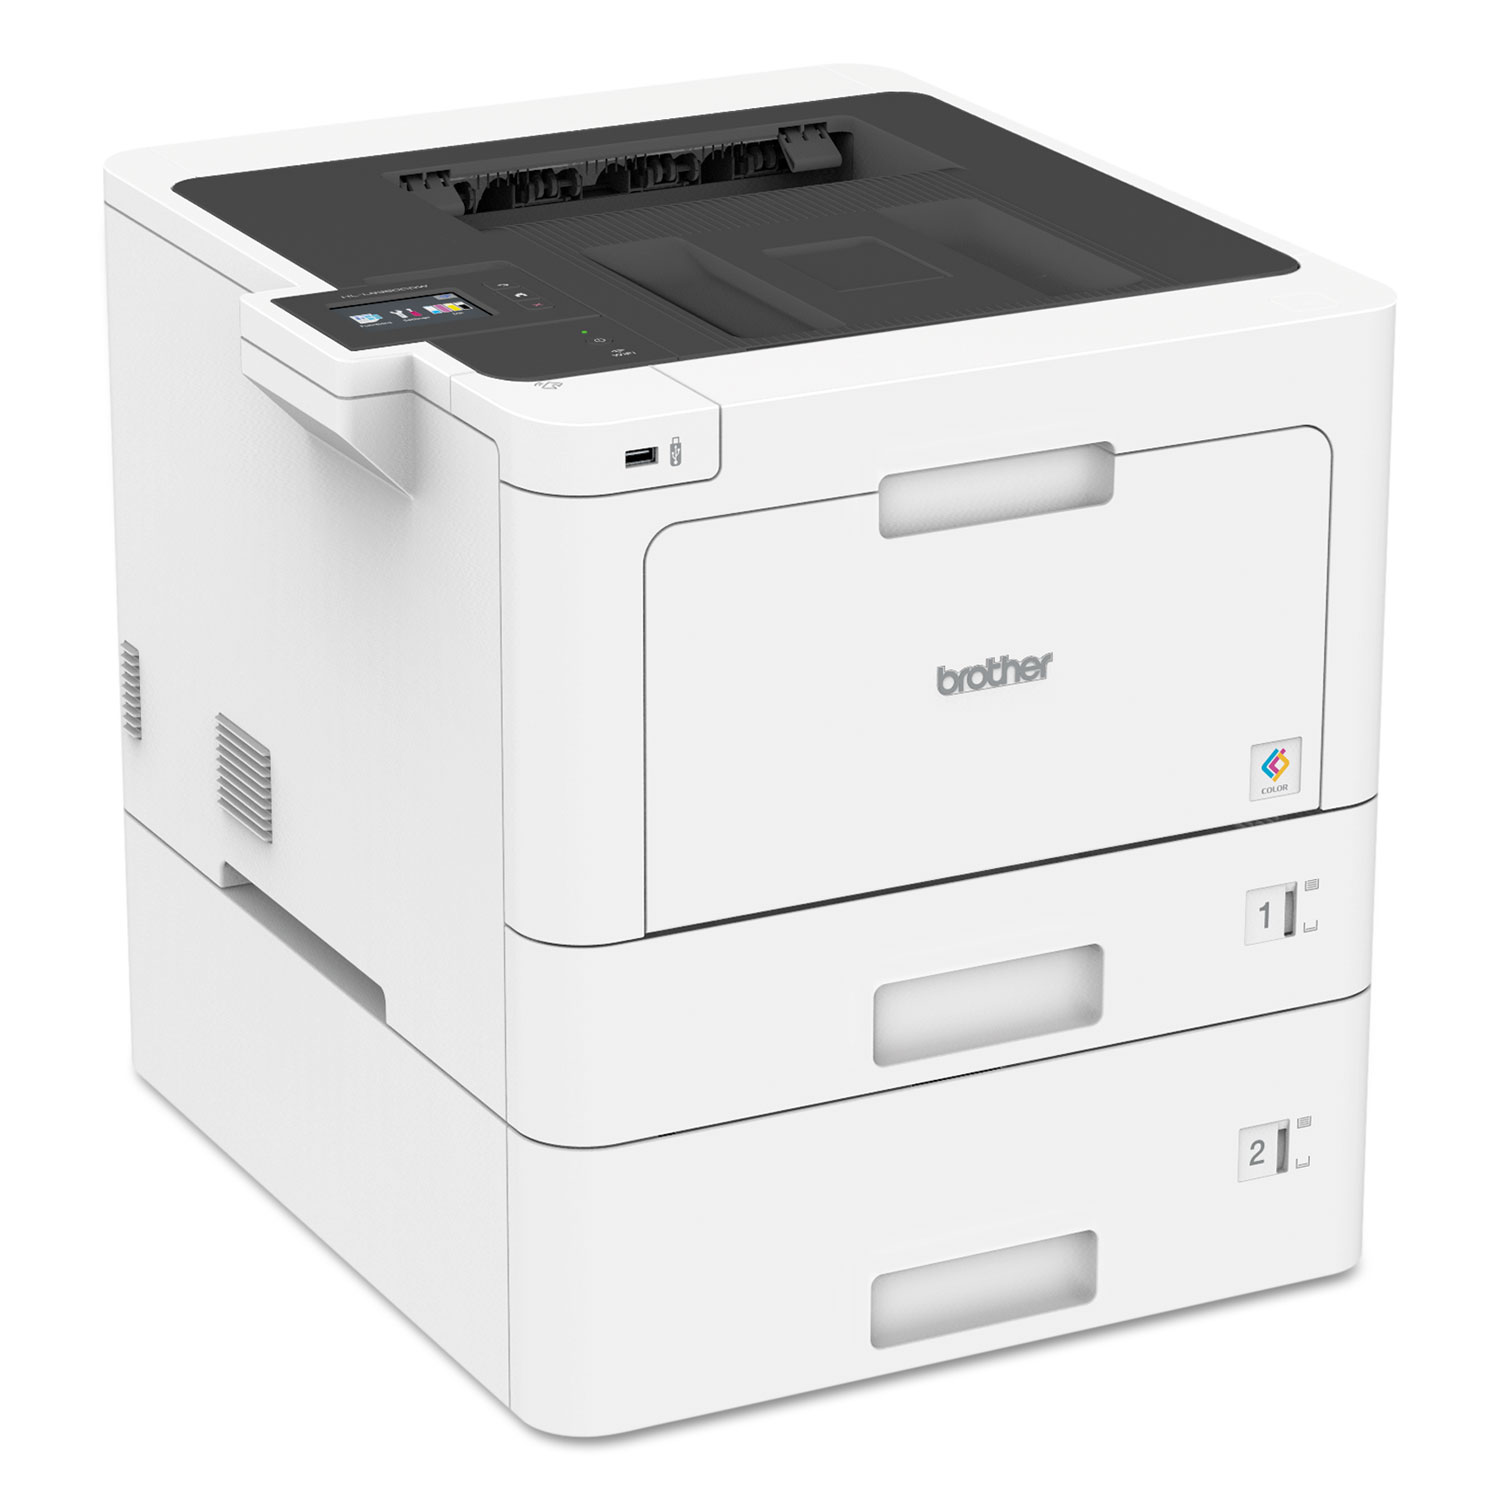 HL-L8360CDWT Business Color Laser Printer, Duplex Printing